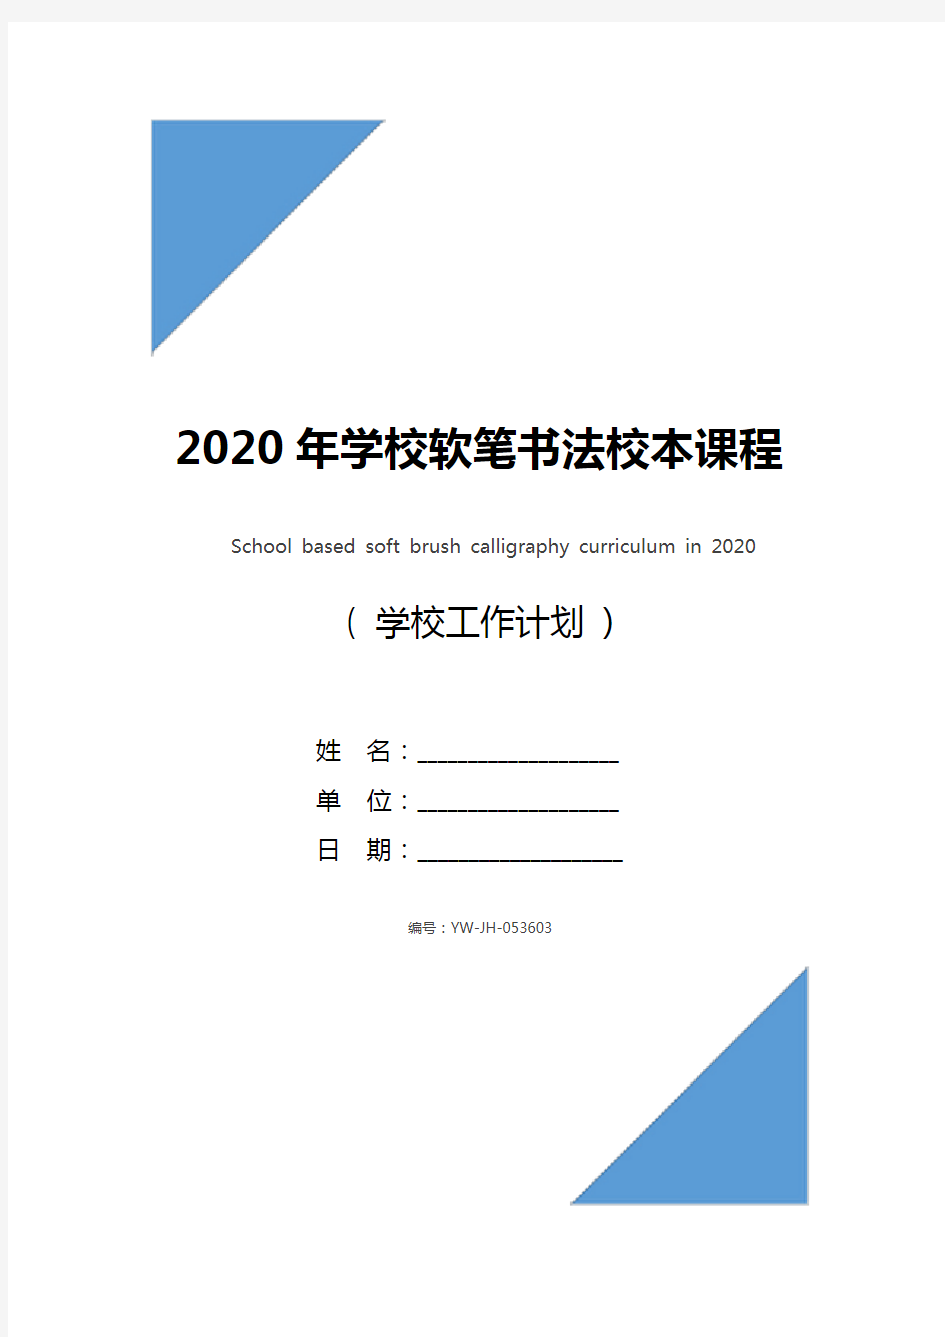 2020年学校软笔书法校本课程